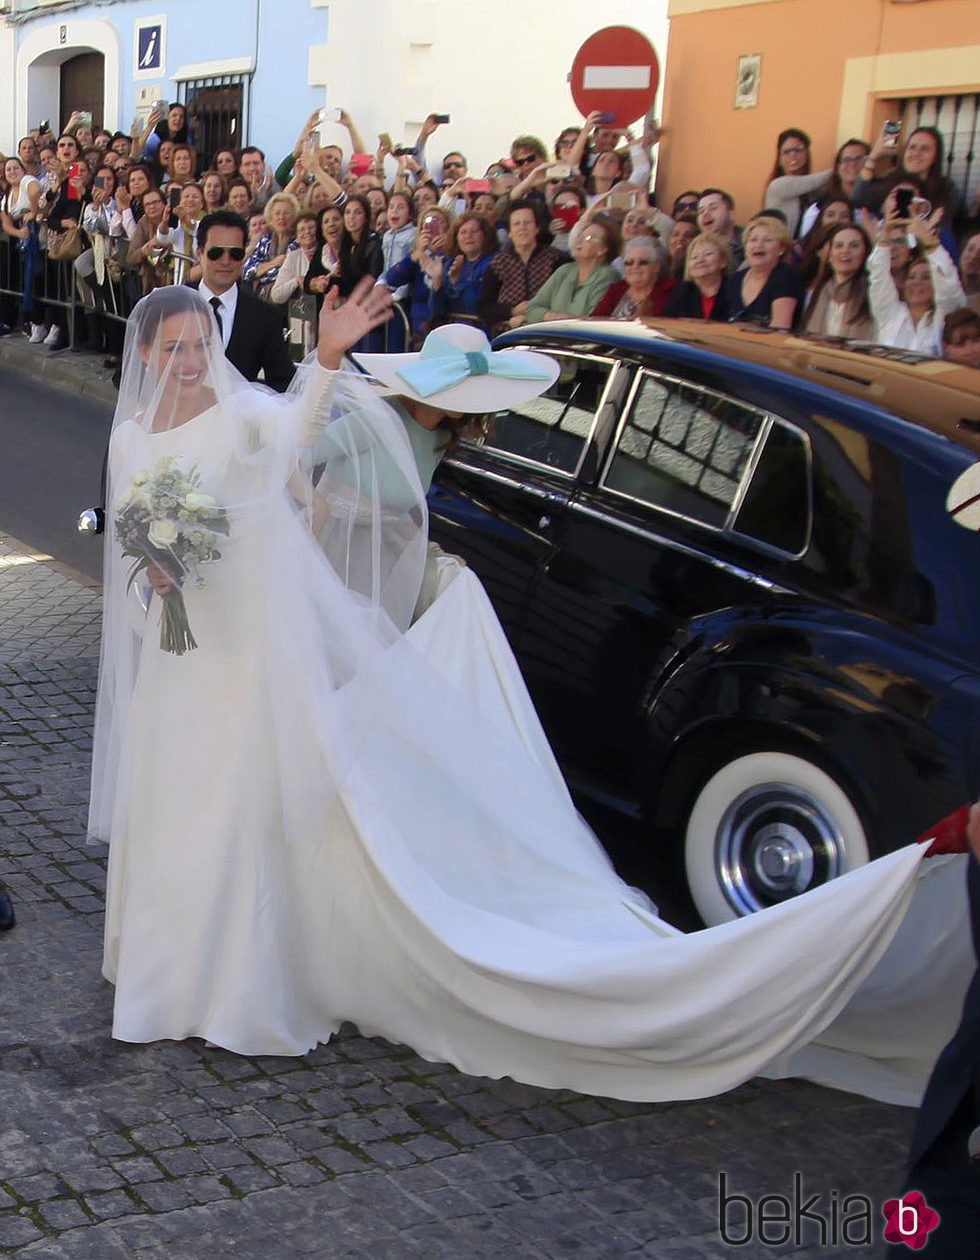 Eva González saludando a sus vecinos a su llegada a su boda con Cayetano Rivera